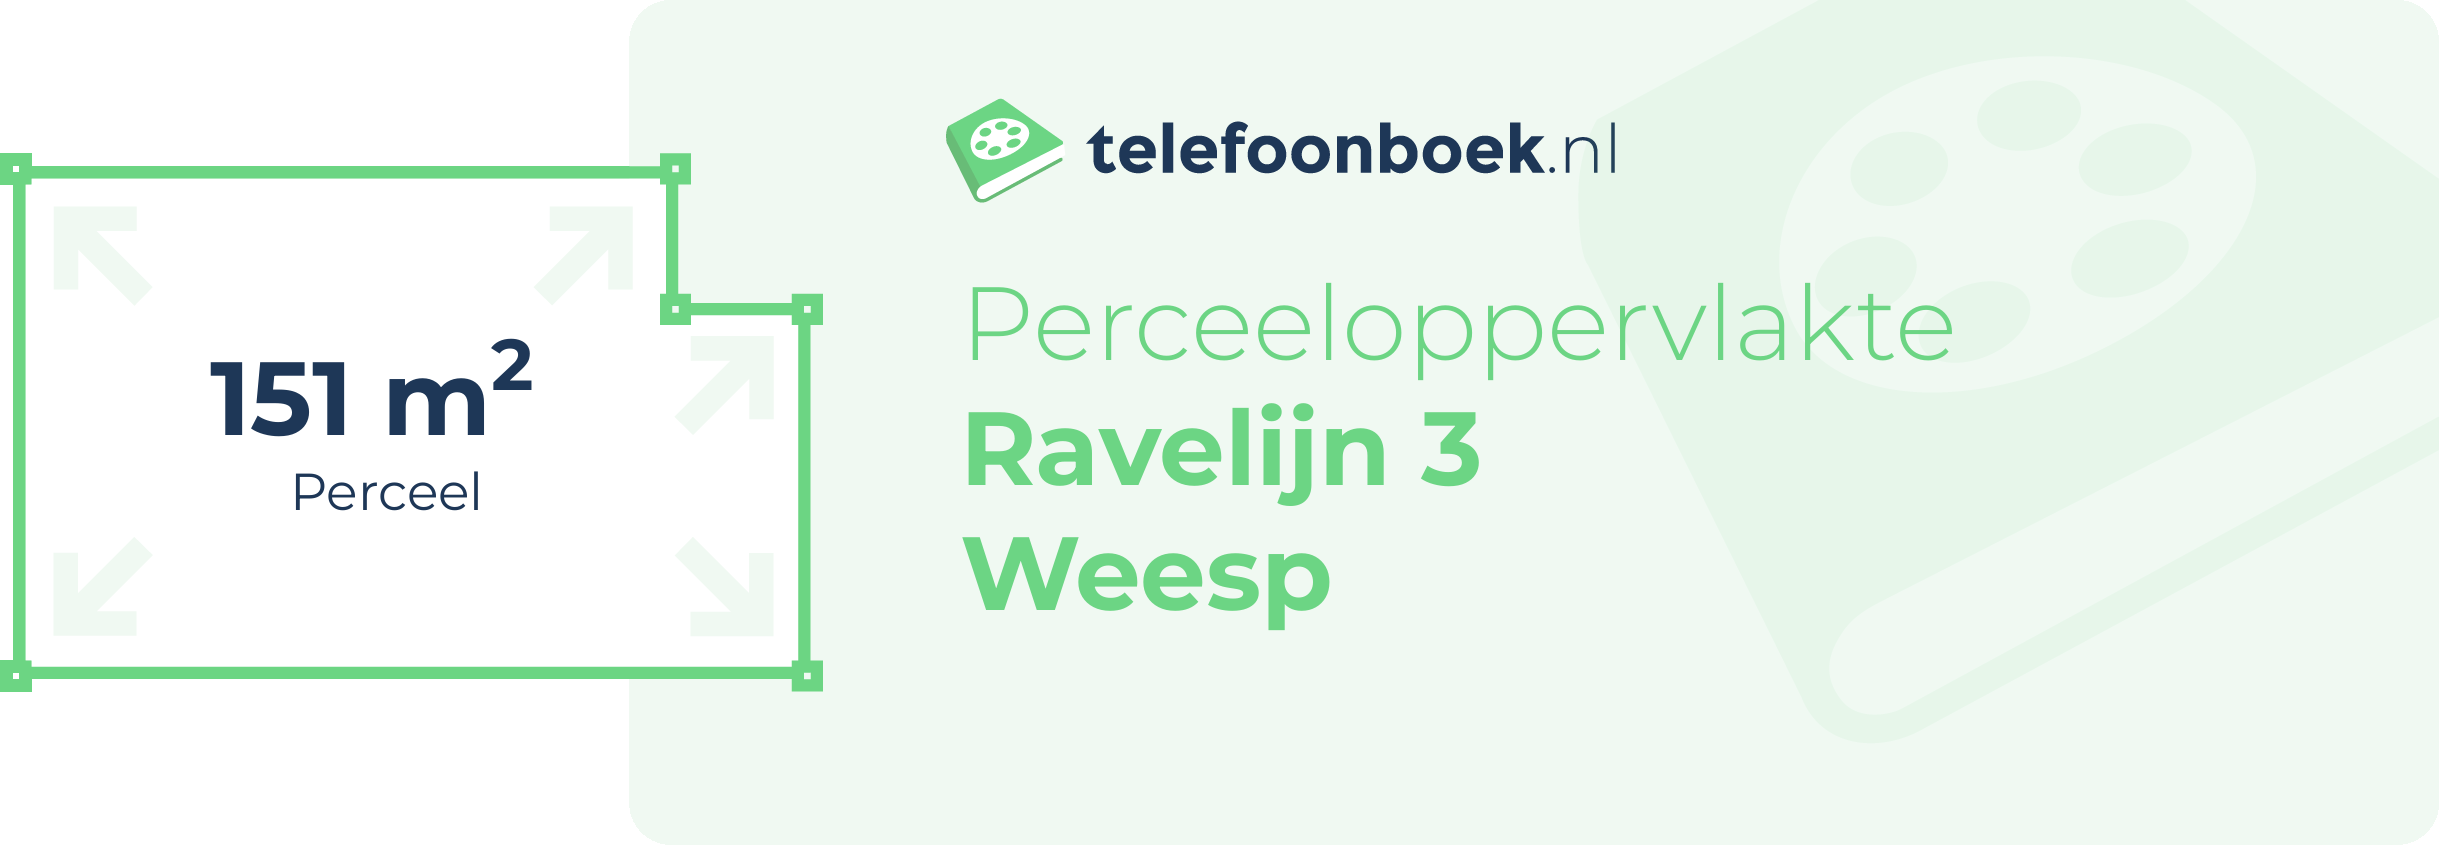 Perceeloppervlakte Ravelijn 3 Weesp